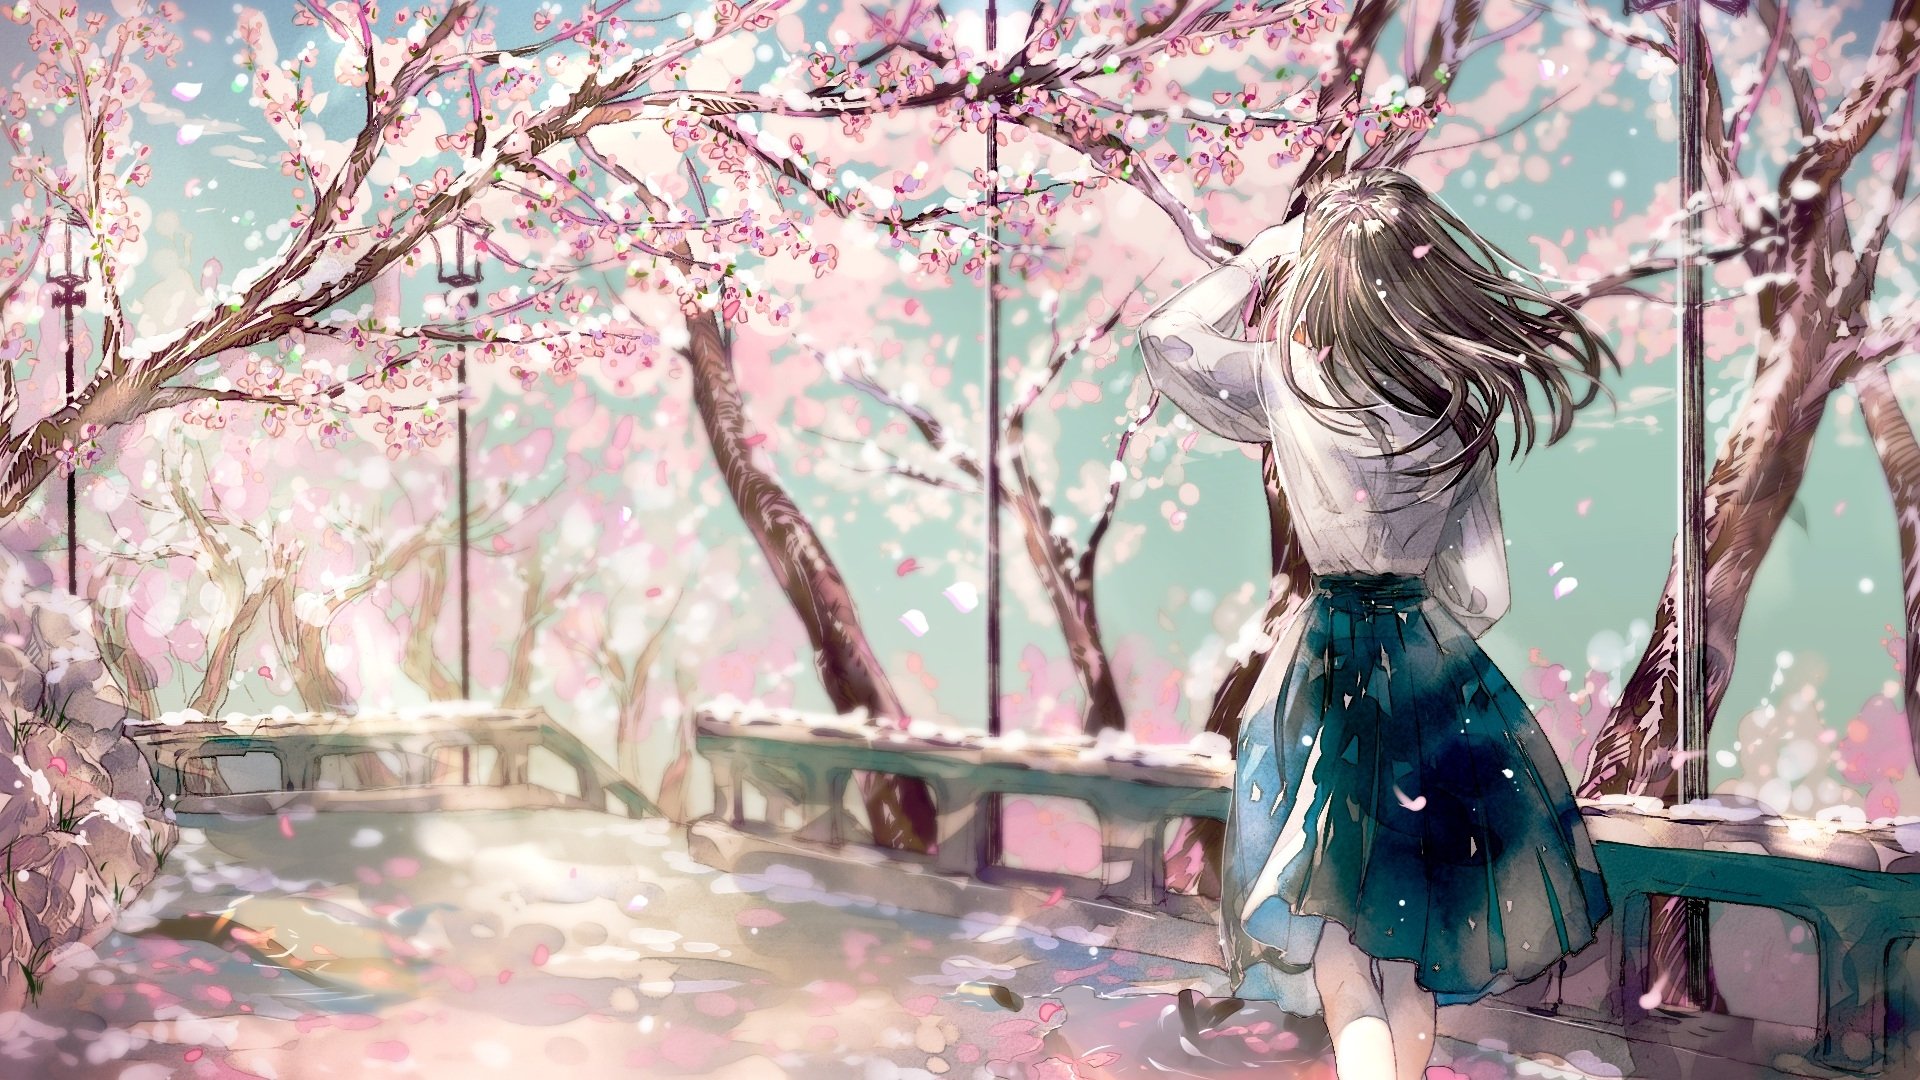 Wallpaper, anime girls, sakura tree, pink flowers 1920x1080